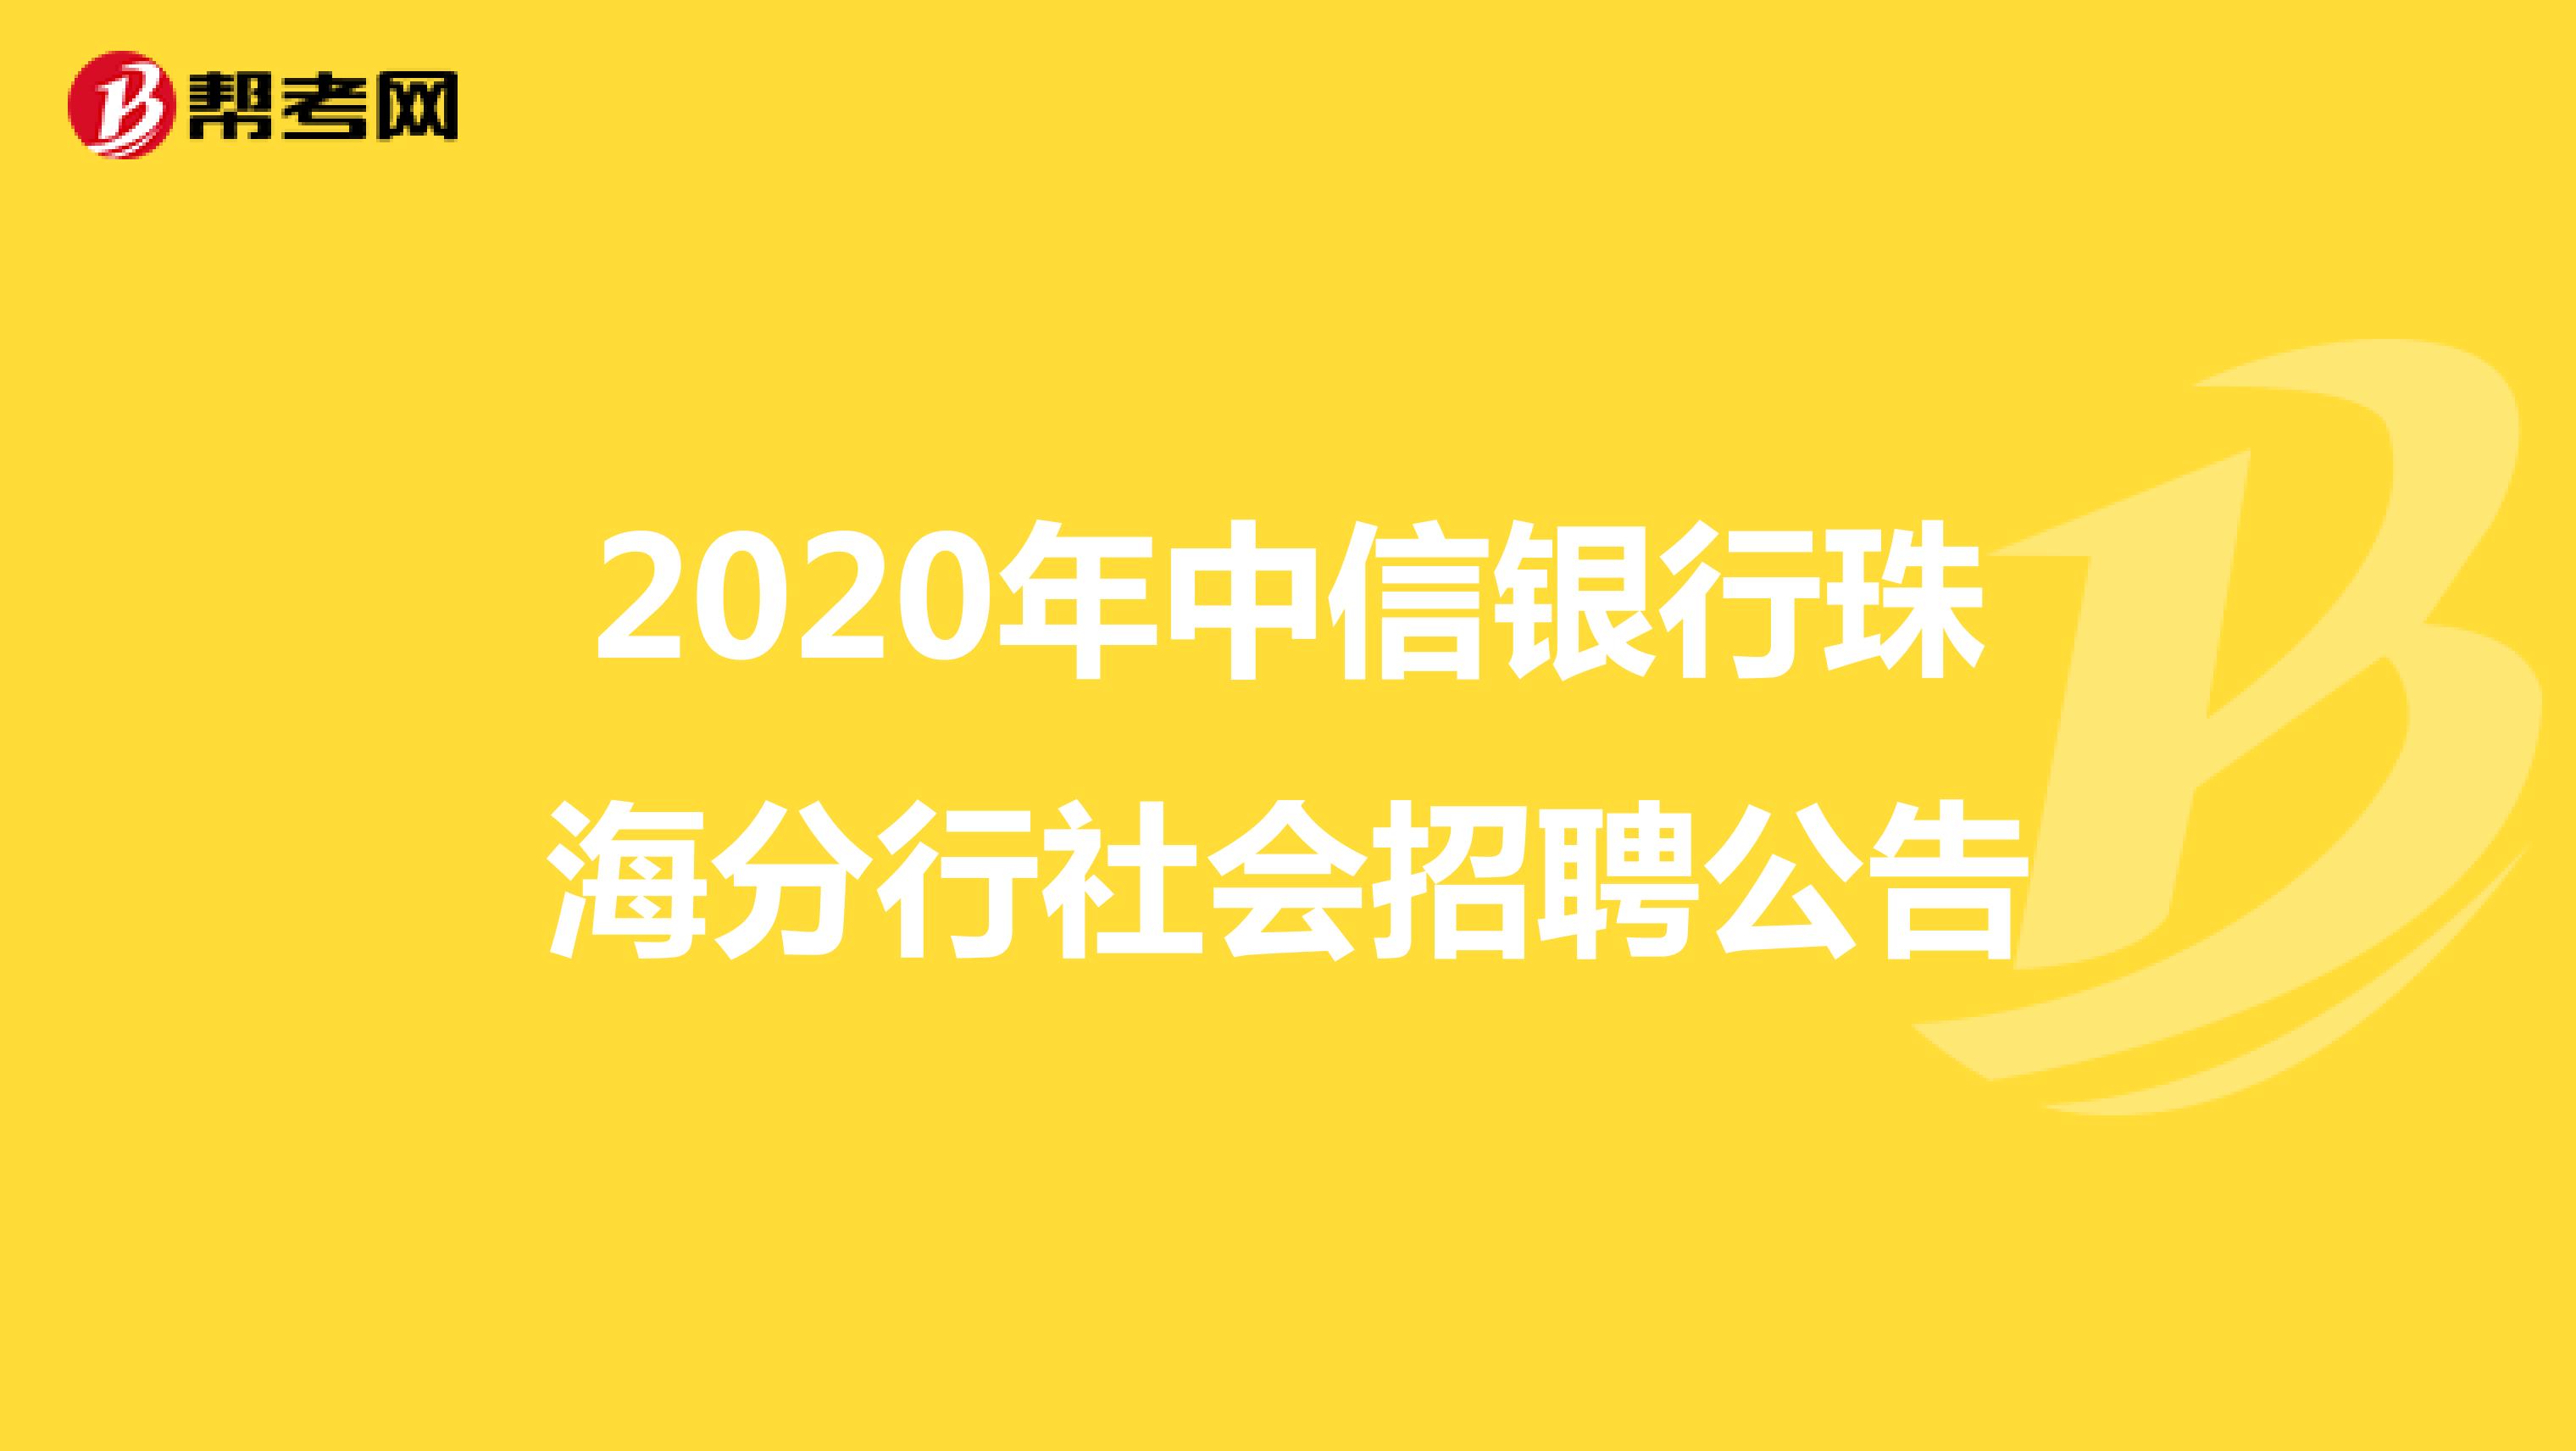 2020年中信银行珠海分行社会招聘公告